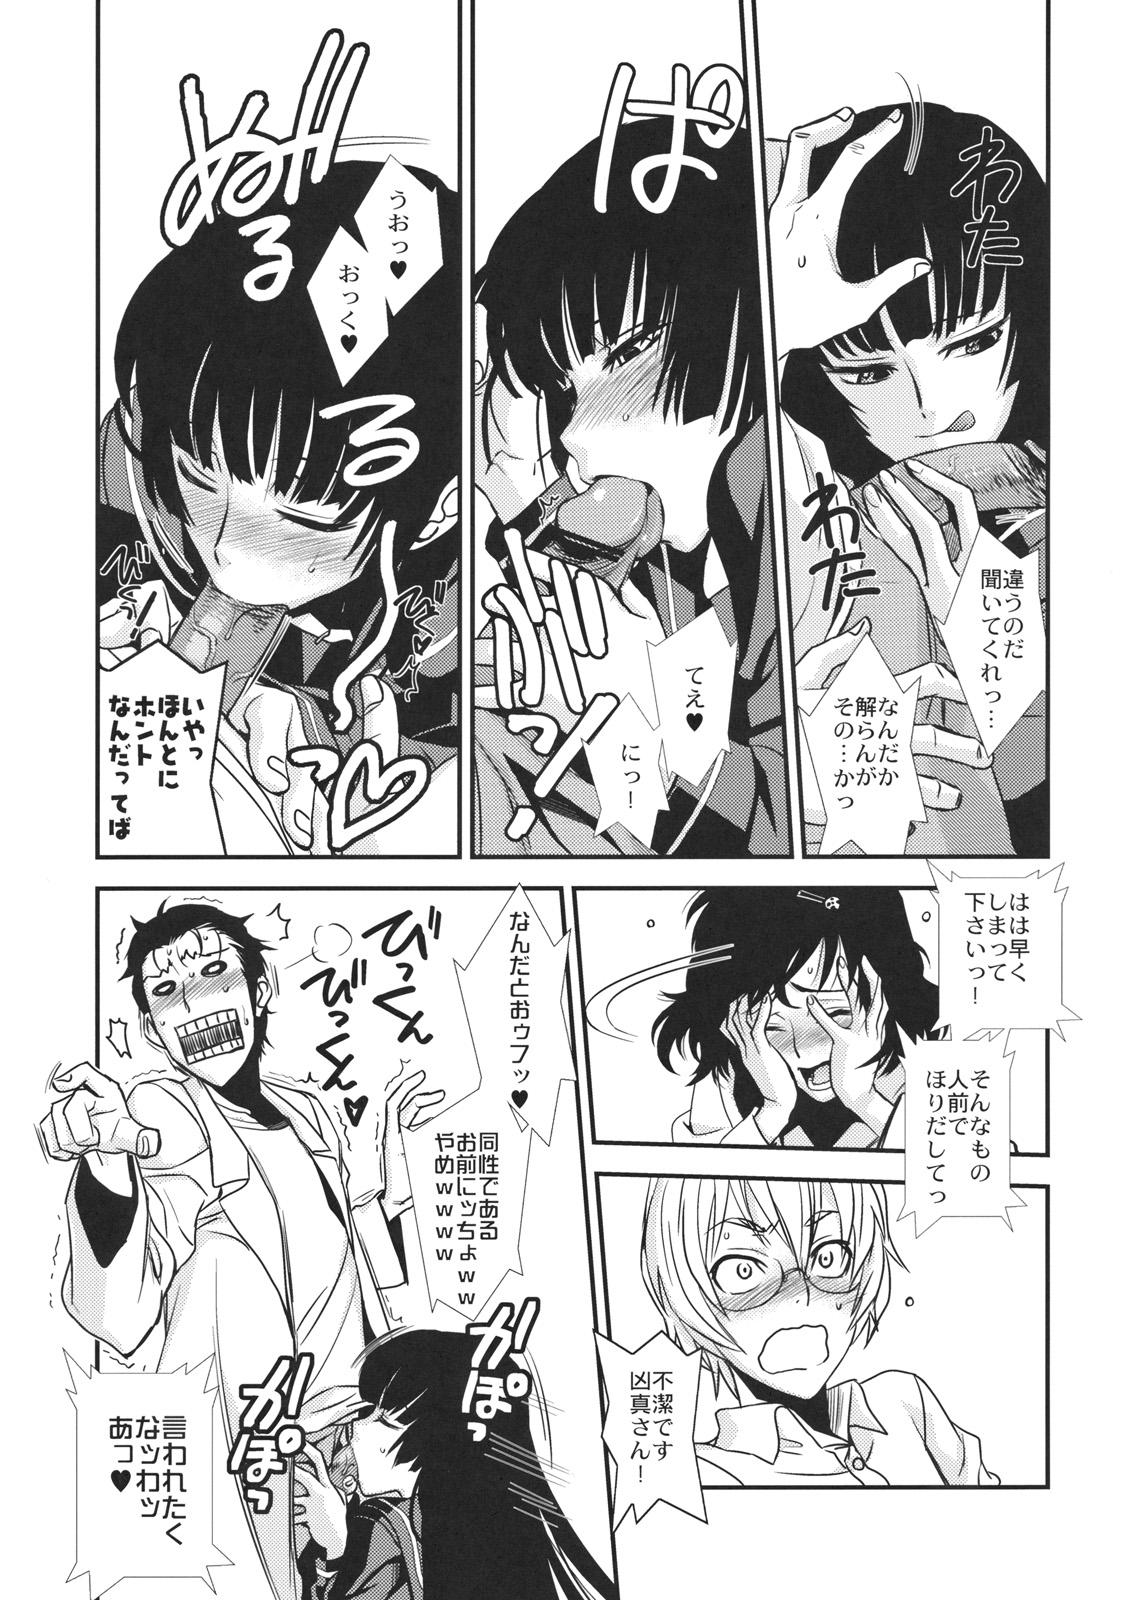 Cock Sucking Hontou ni Atta Kowai Hanashi - Steinsgate Tasogare otome x amnesia Fatal frame Sologirl - Page 10